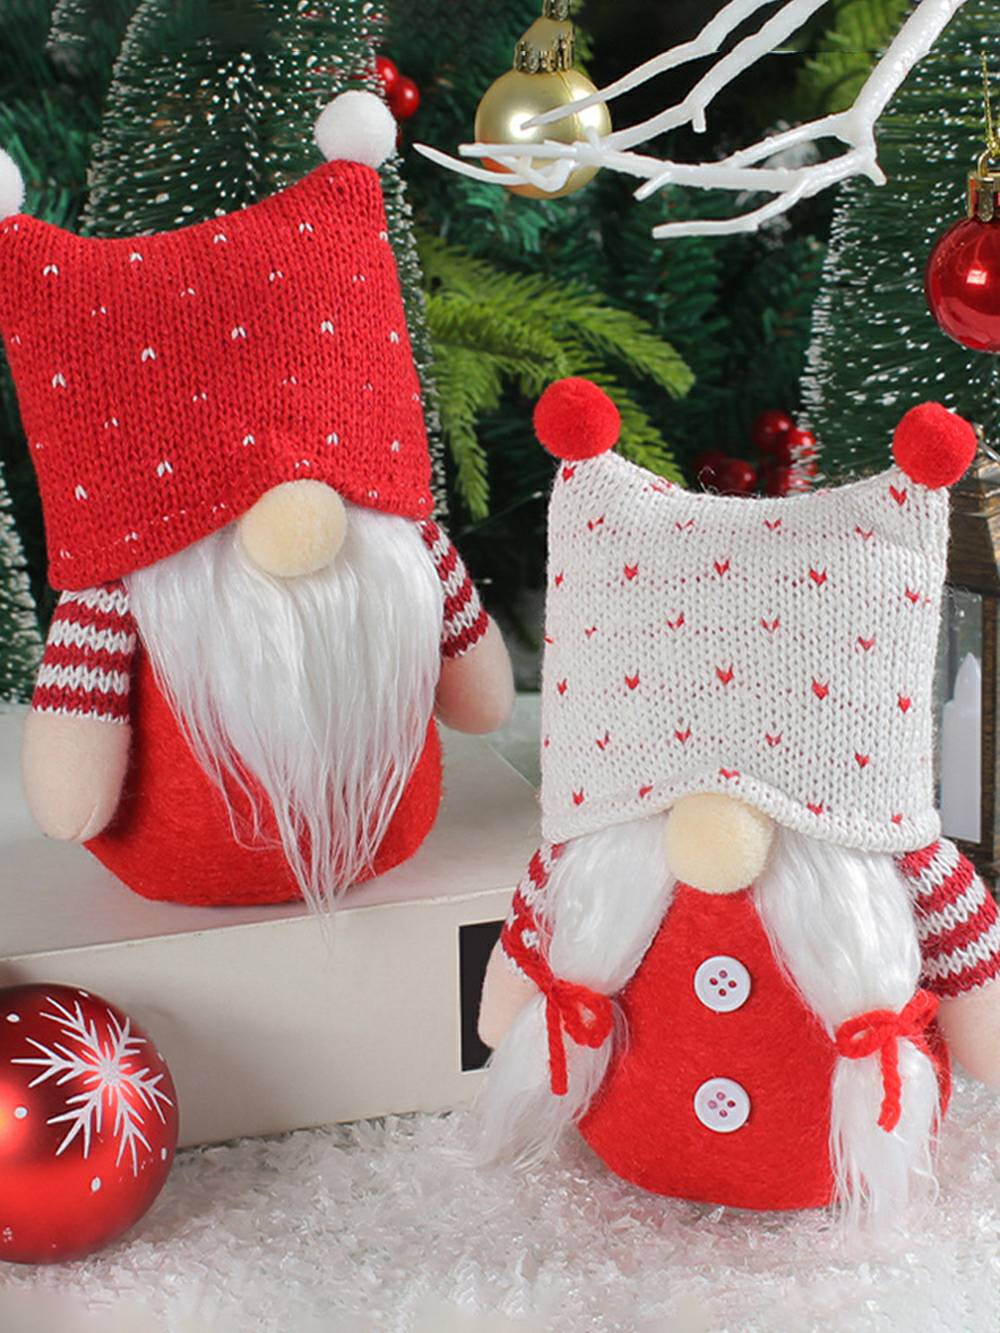 Yndigt juleplys nissepar med strikhue Rudolph Dolls